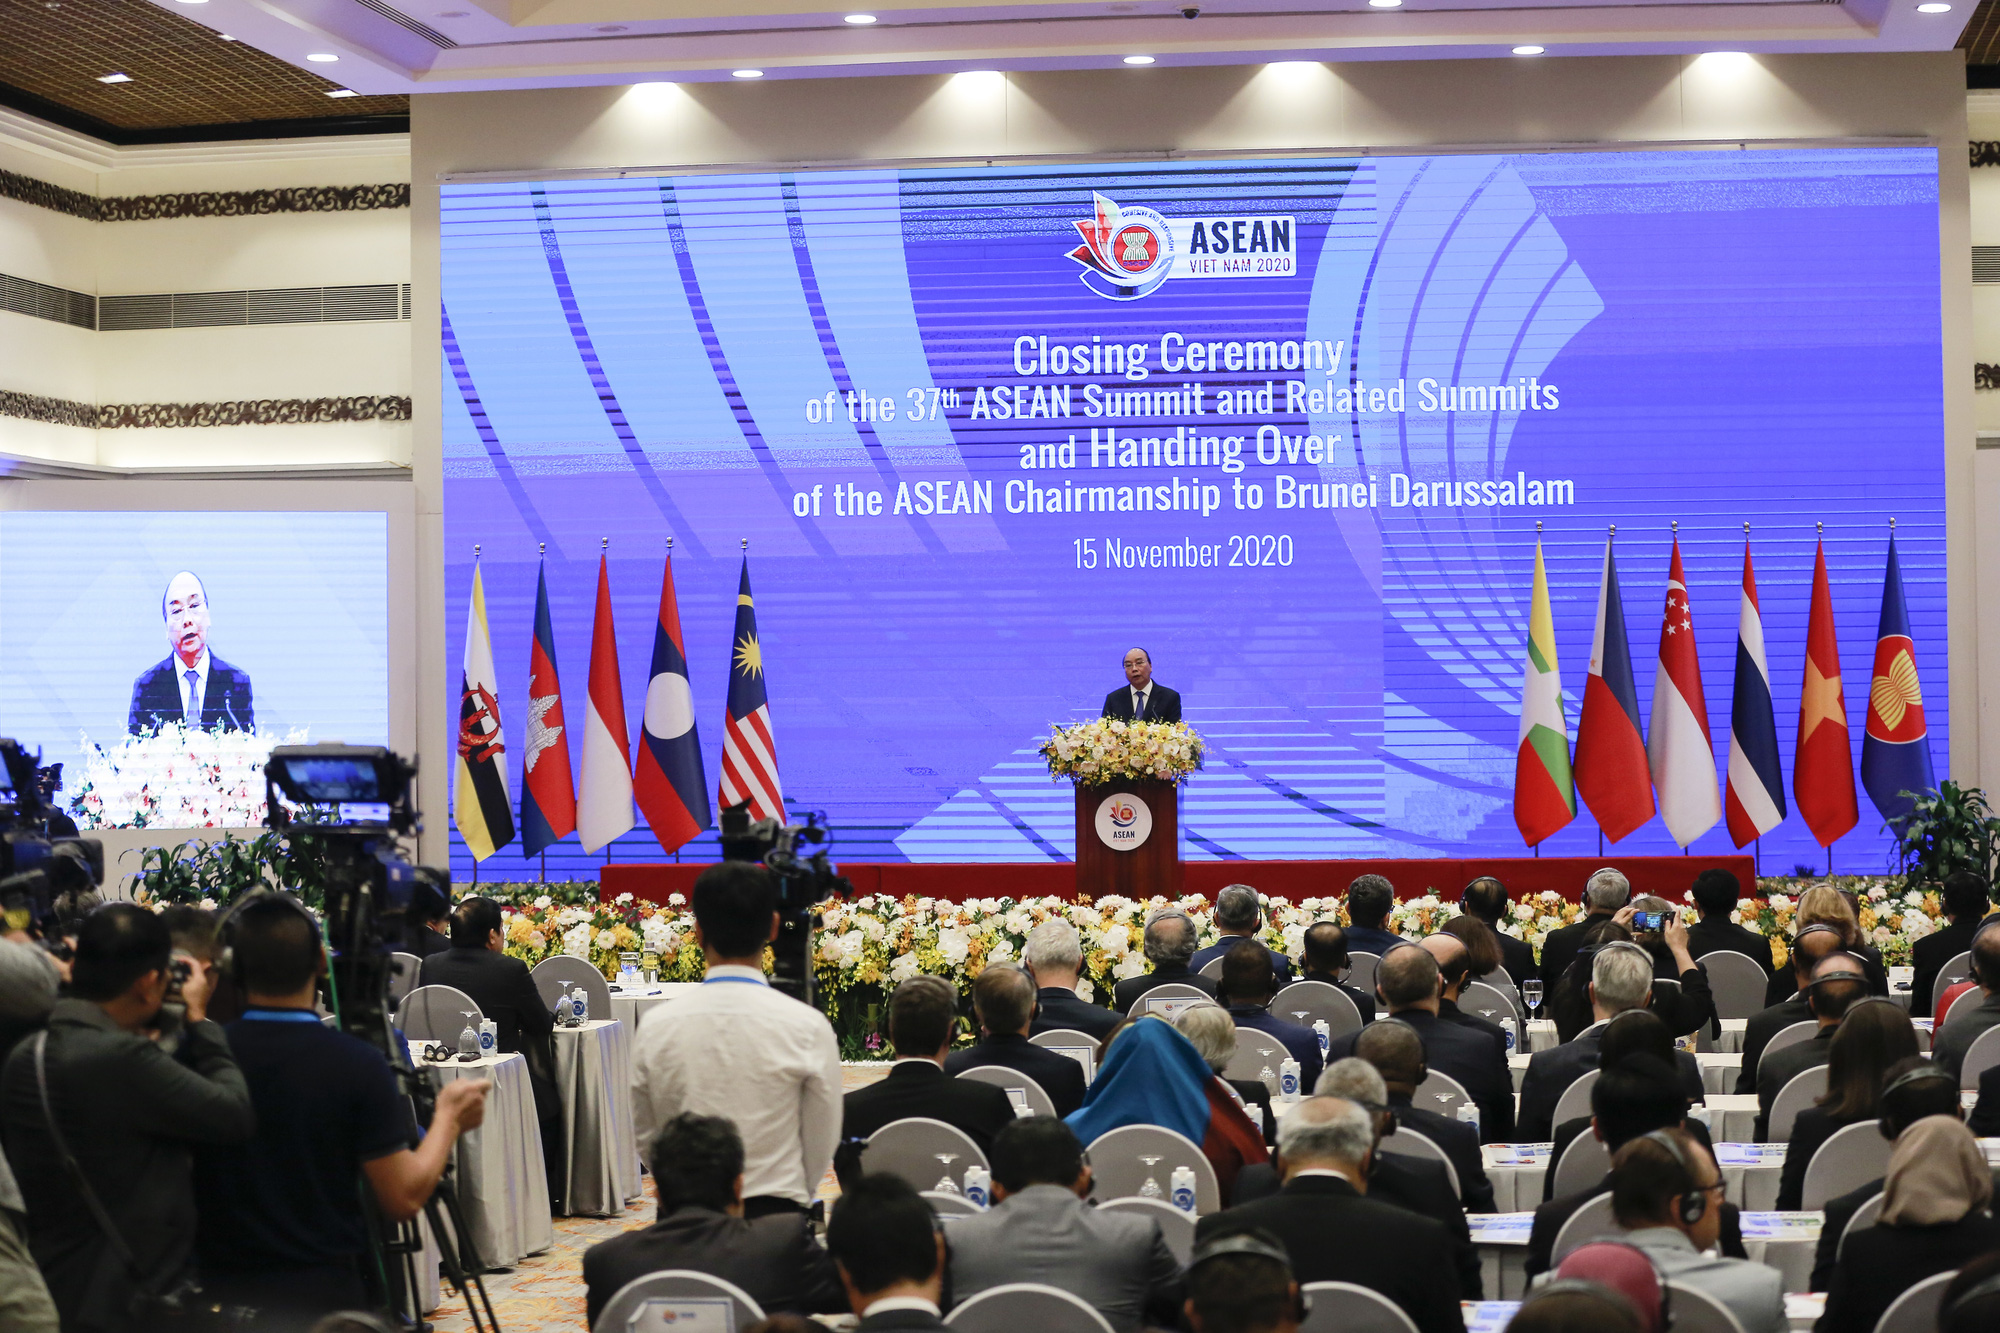 Hội nghị cấp cao ASEAN-37: Nhiều quyết sách thúc đẩy phục hồi kinh tế sau đại dịch Covid-19 - Ảnh 1.